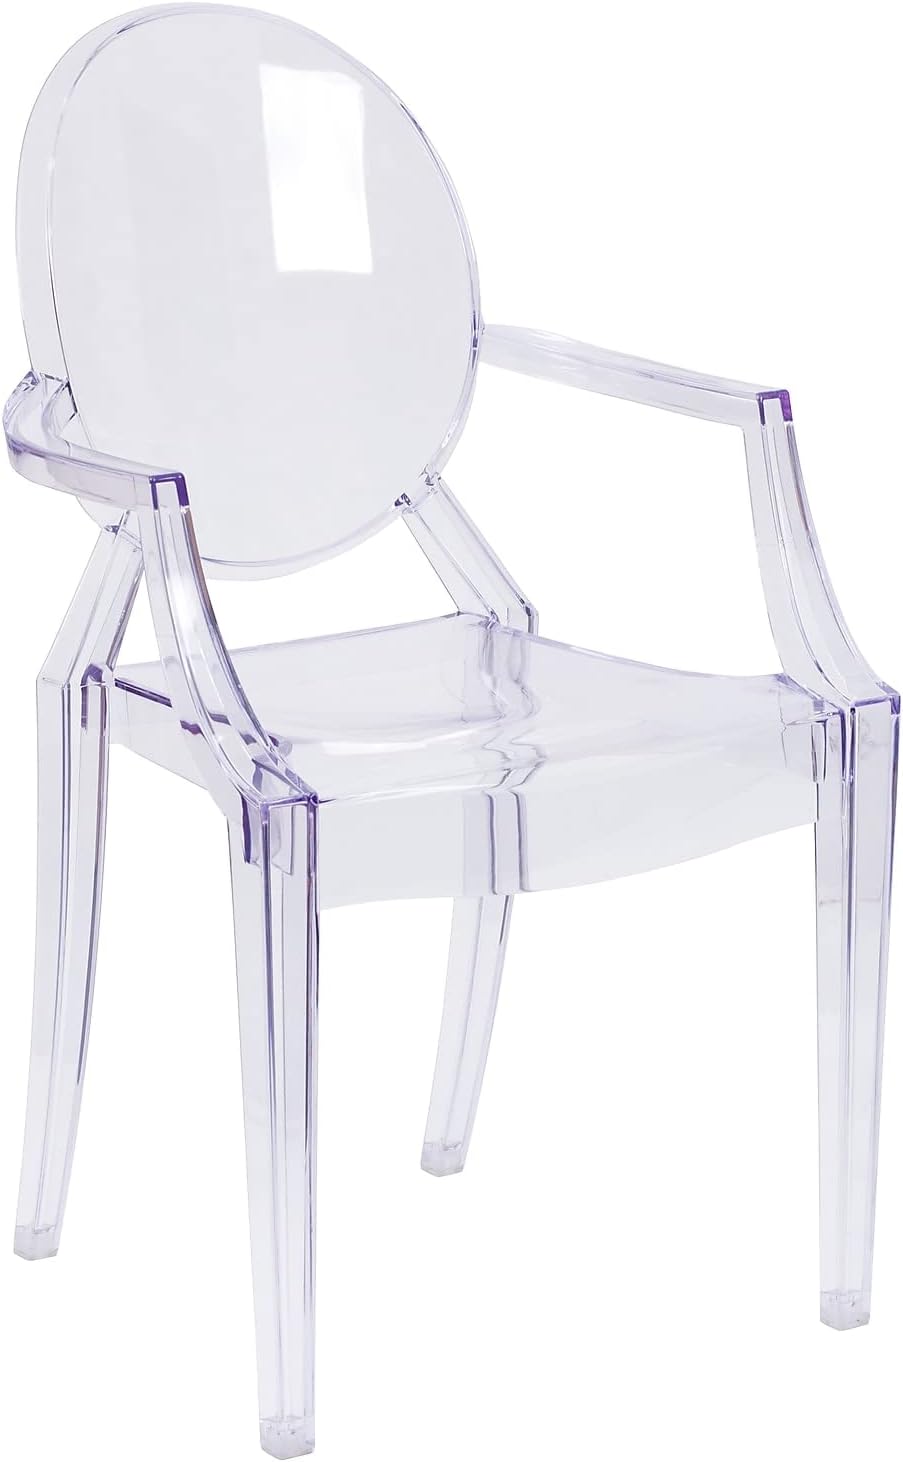 Crystal acrylic chair